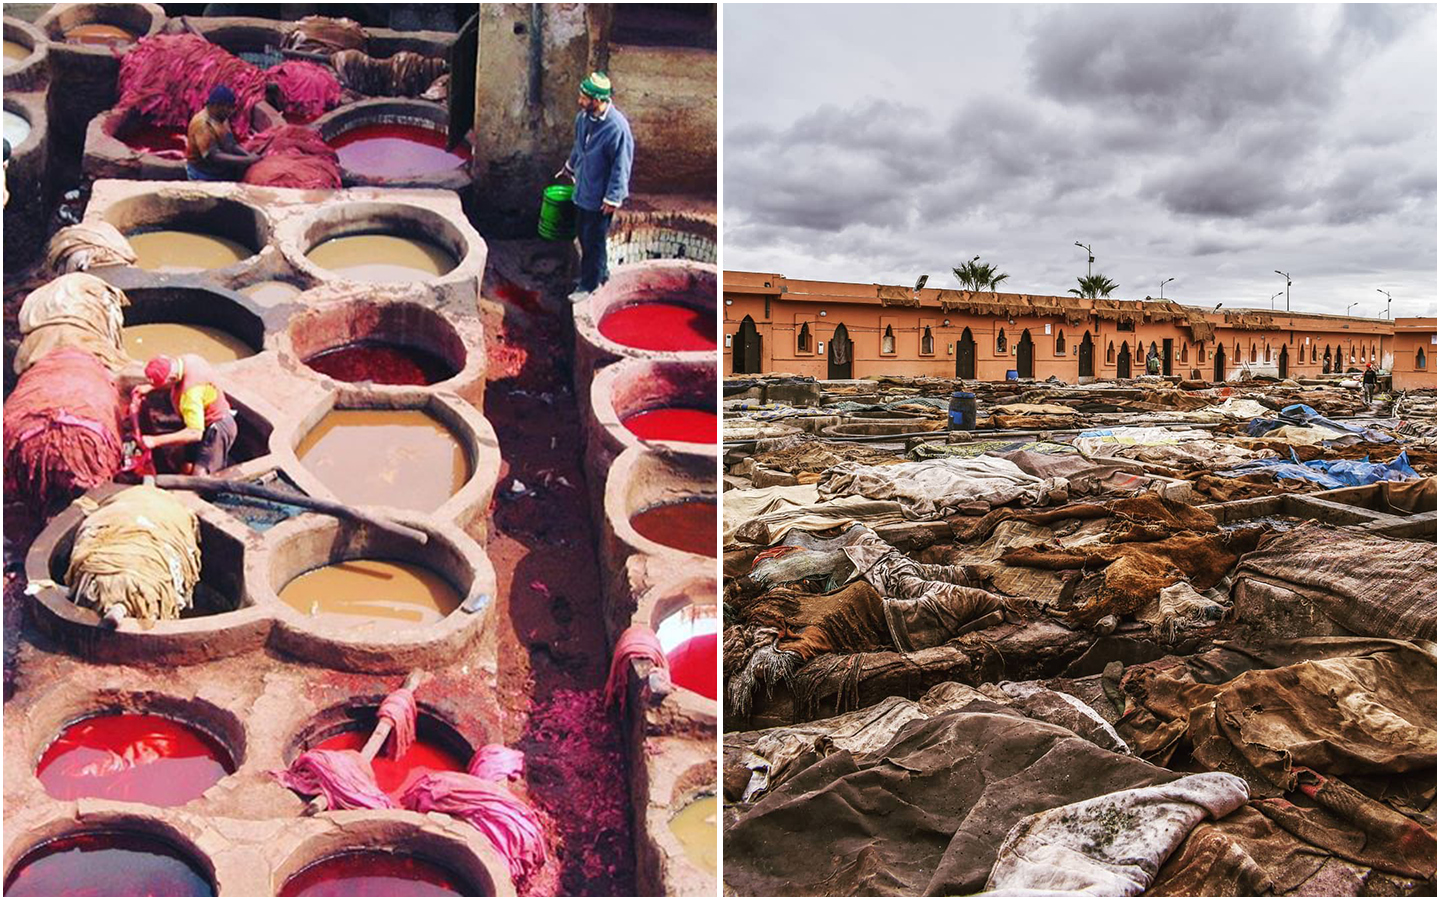 quartier des tanneures fes morocco infos tourisme maroc travel afrique destination